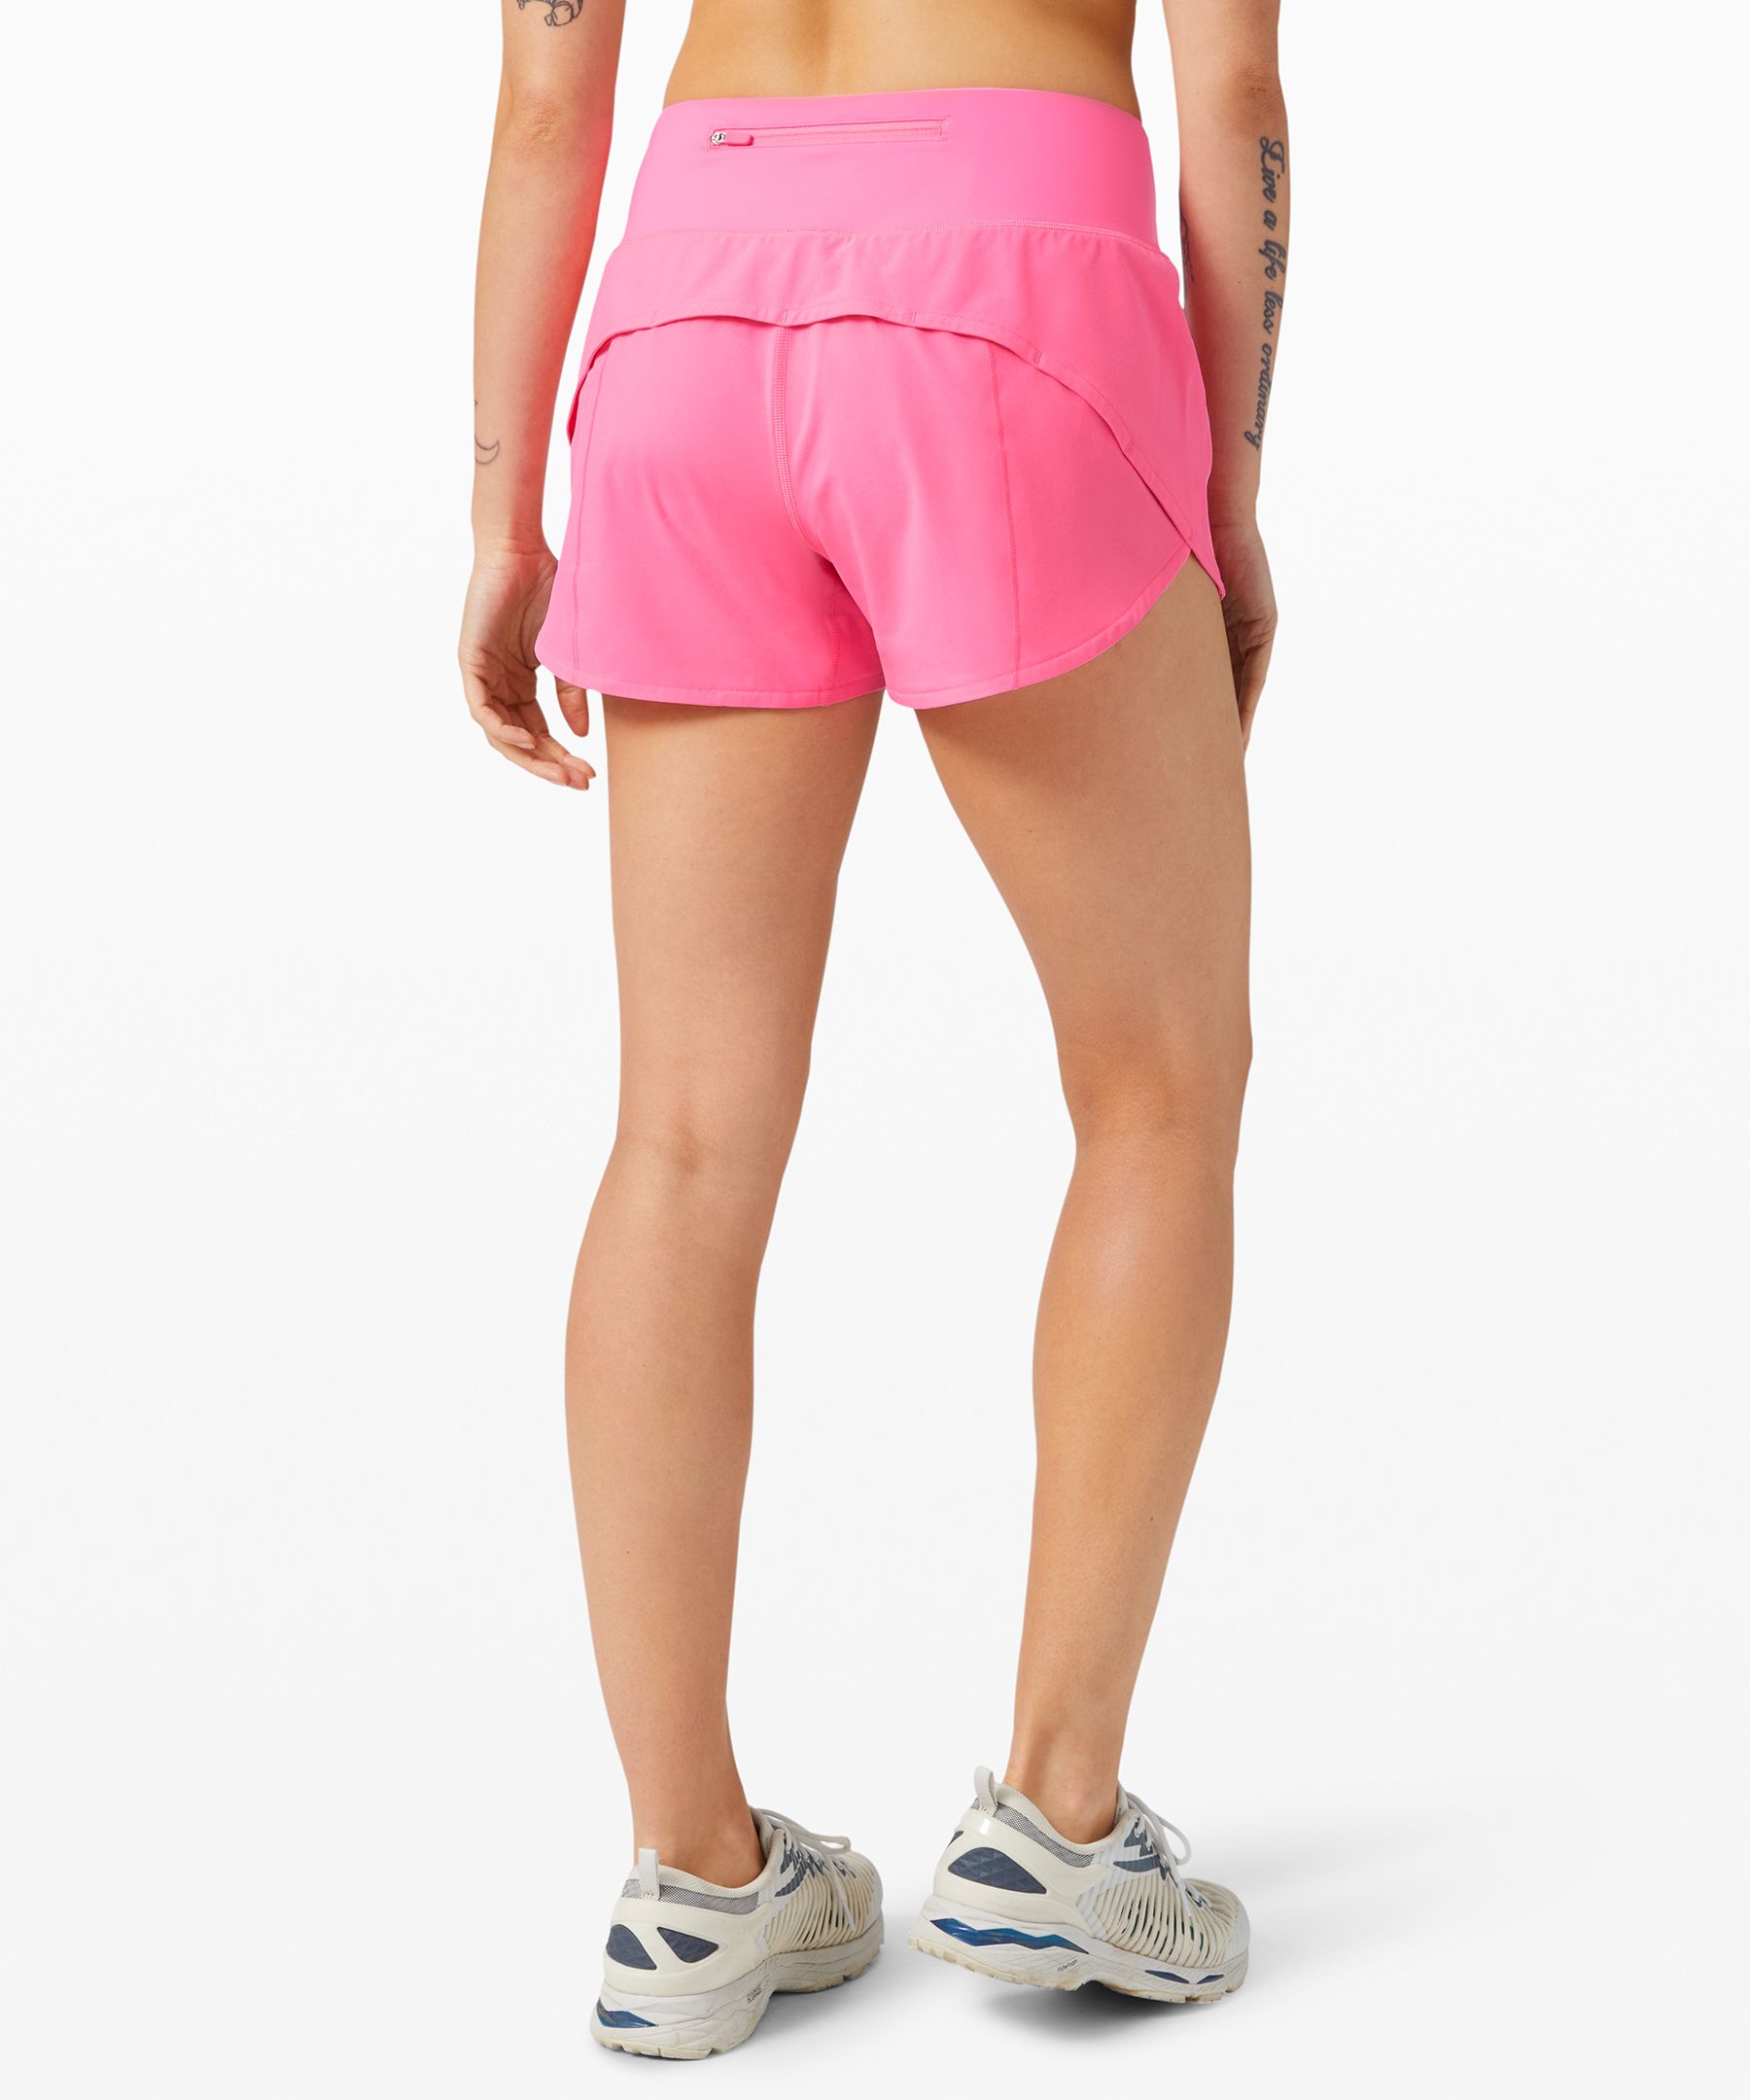 hot pink lululemon shorts